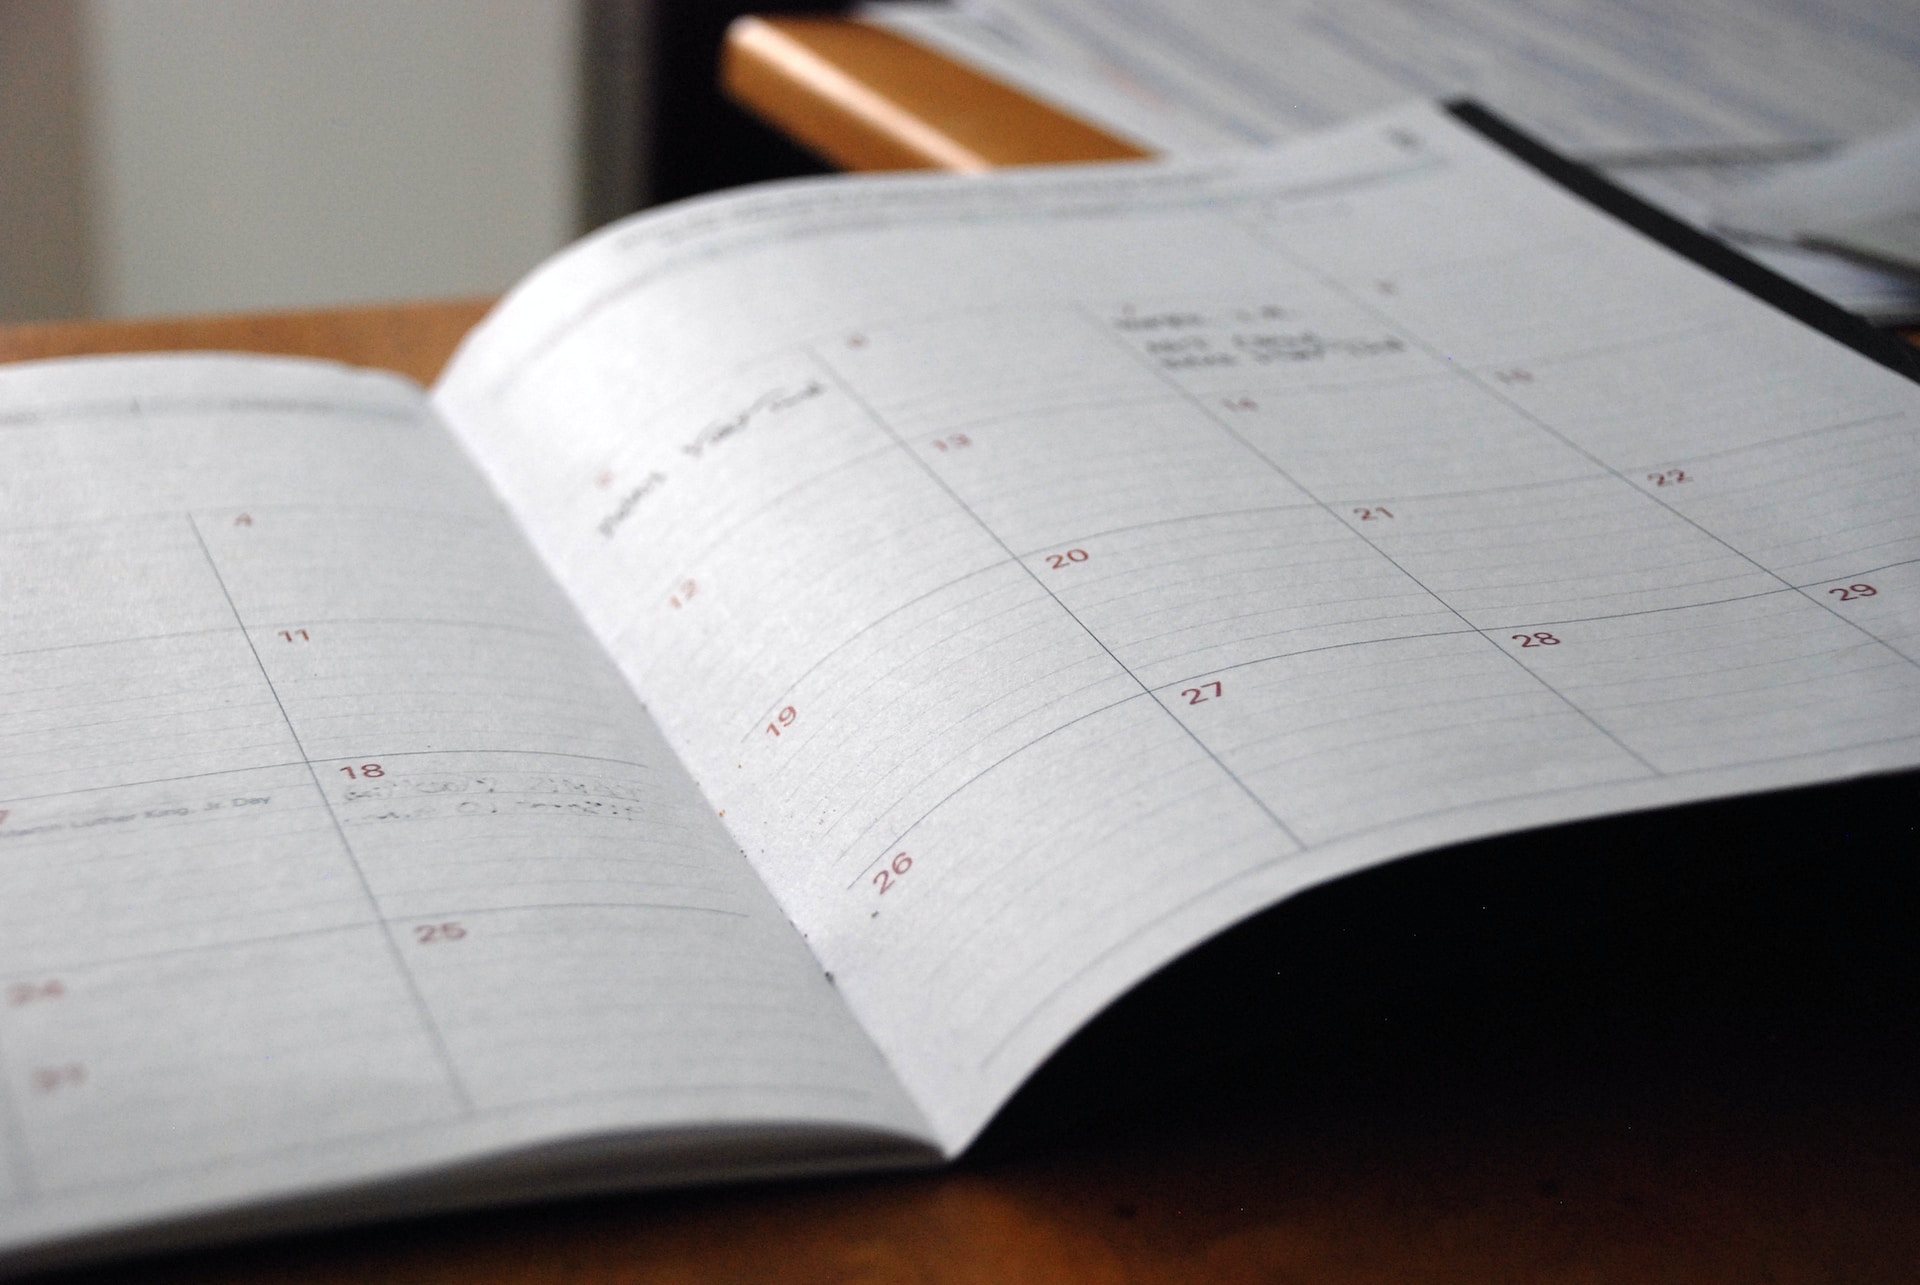 Le calendrier de l'année scolaire : les dates importantes !